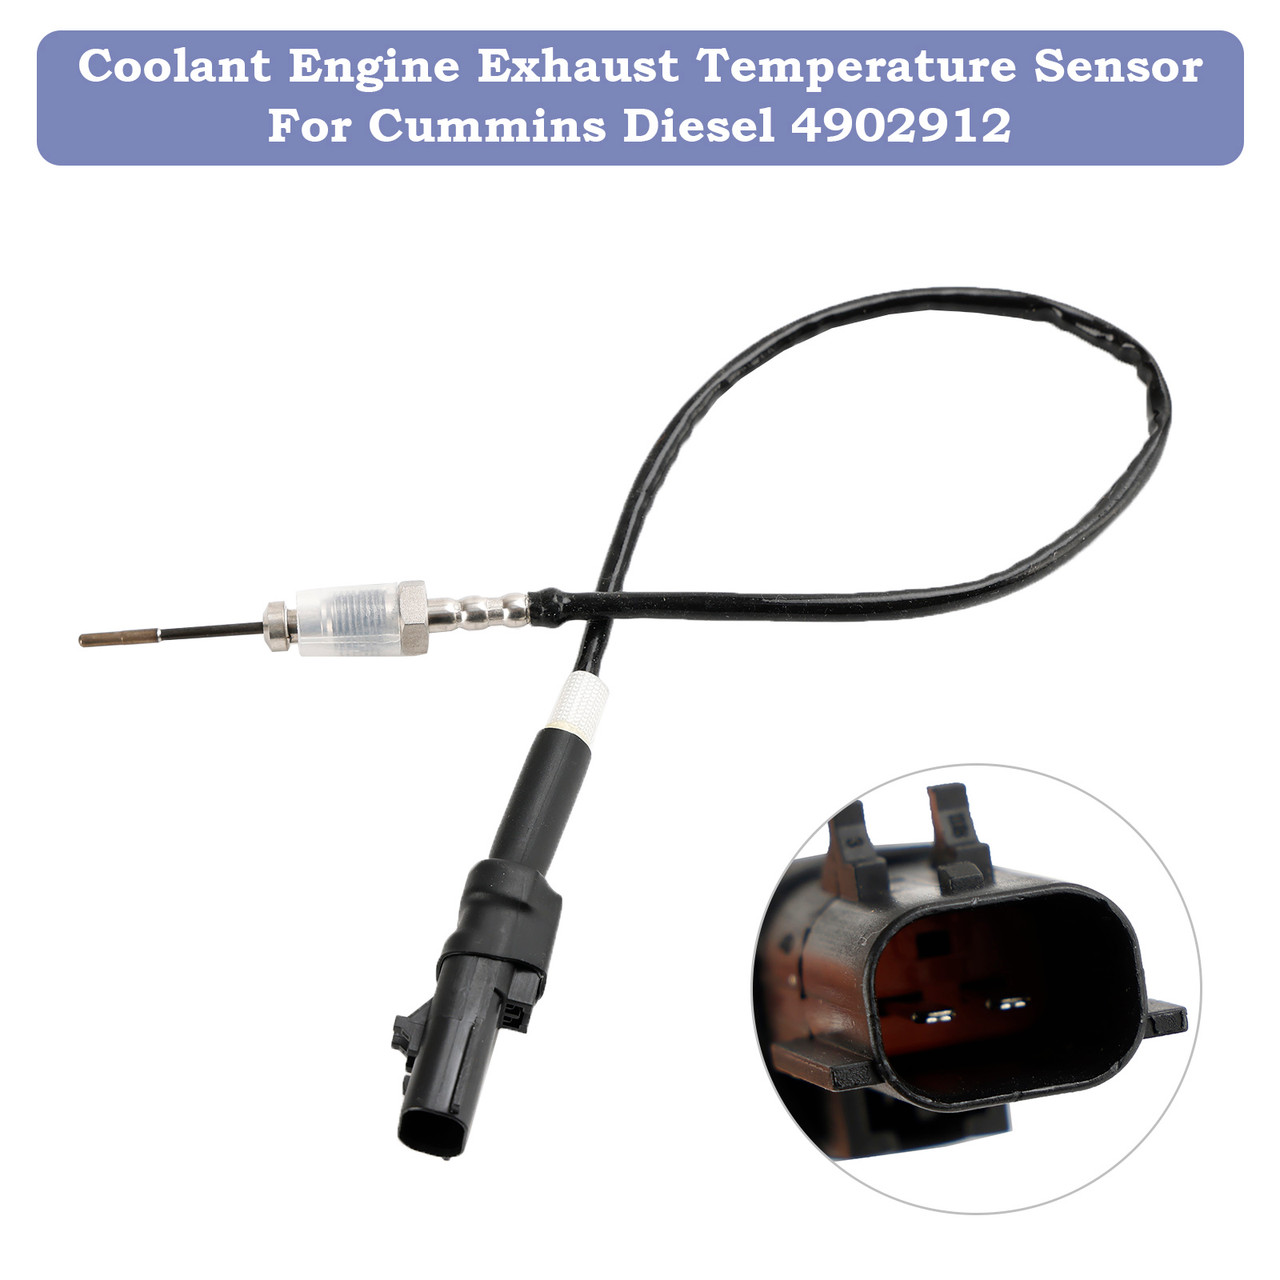 Coolant Engine Exhaust Temperature Sensor For Cummins Diesel 4902912